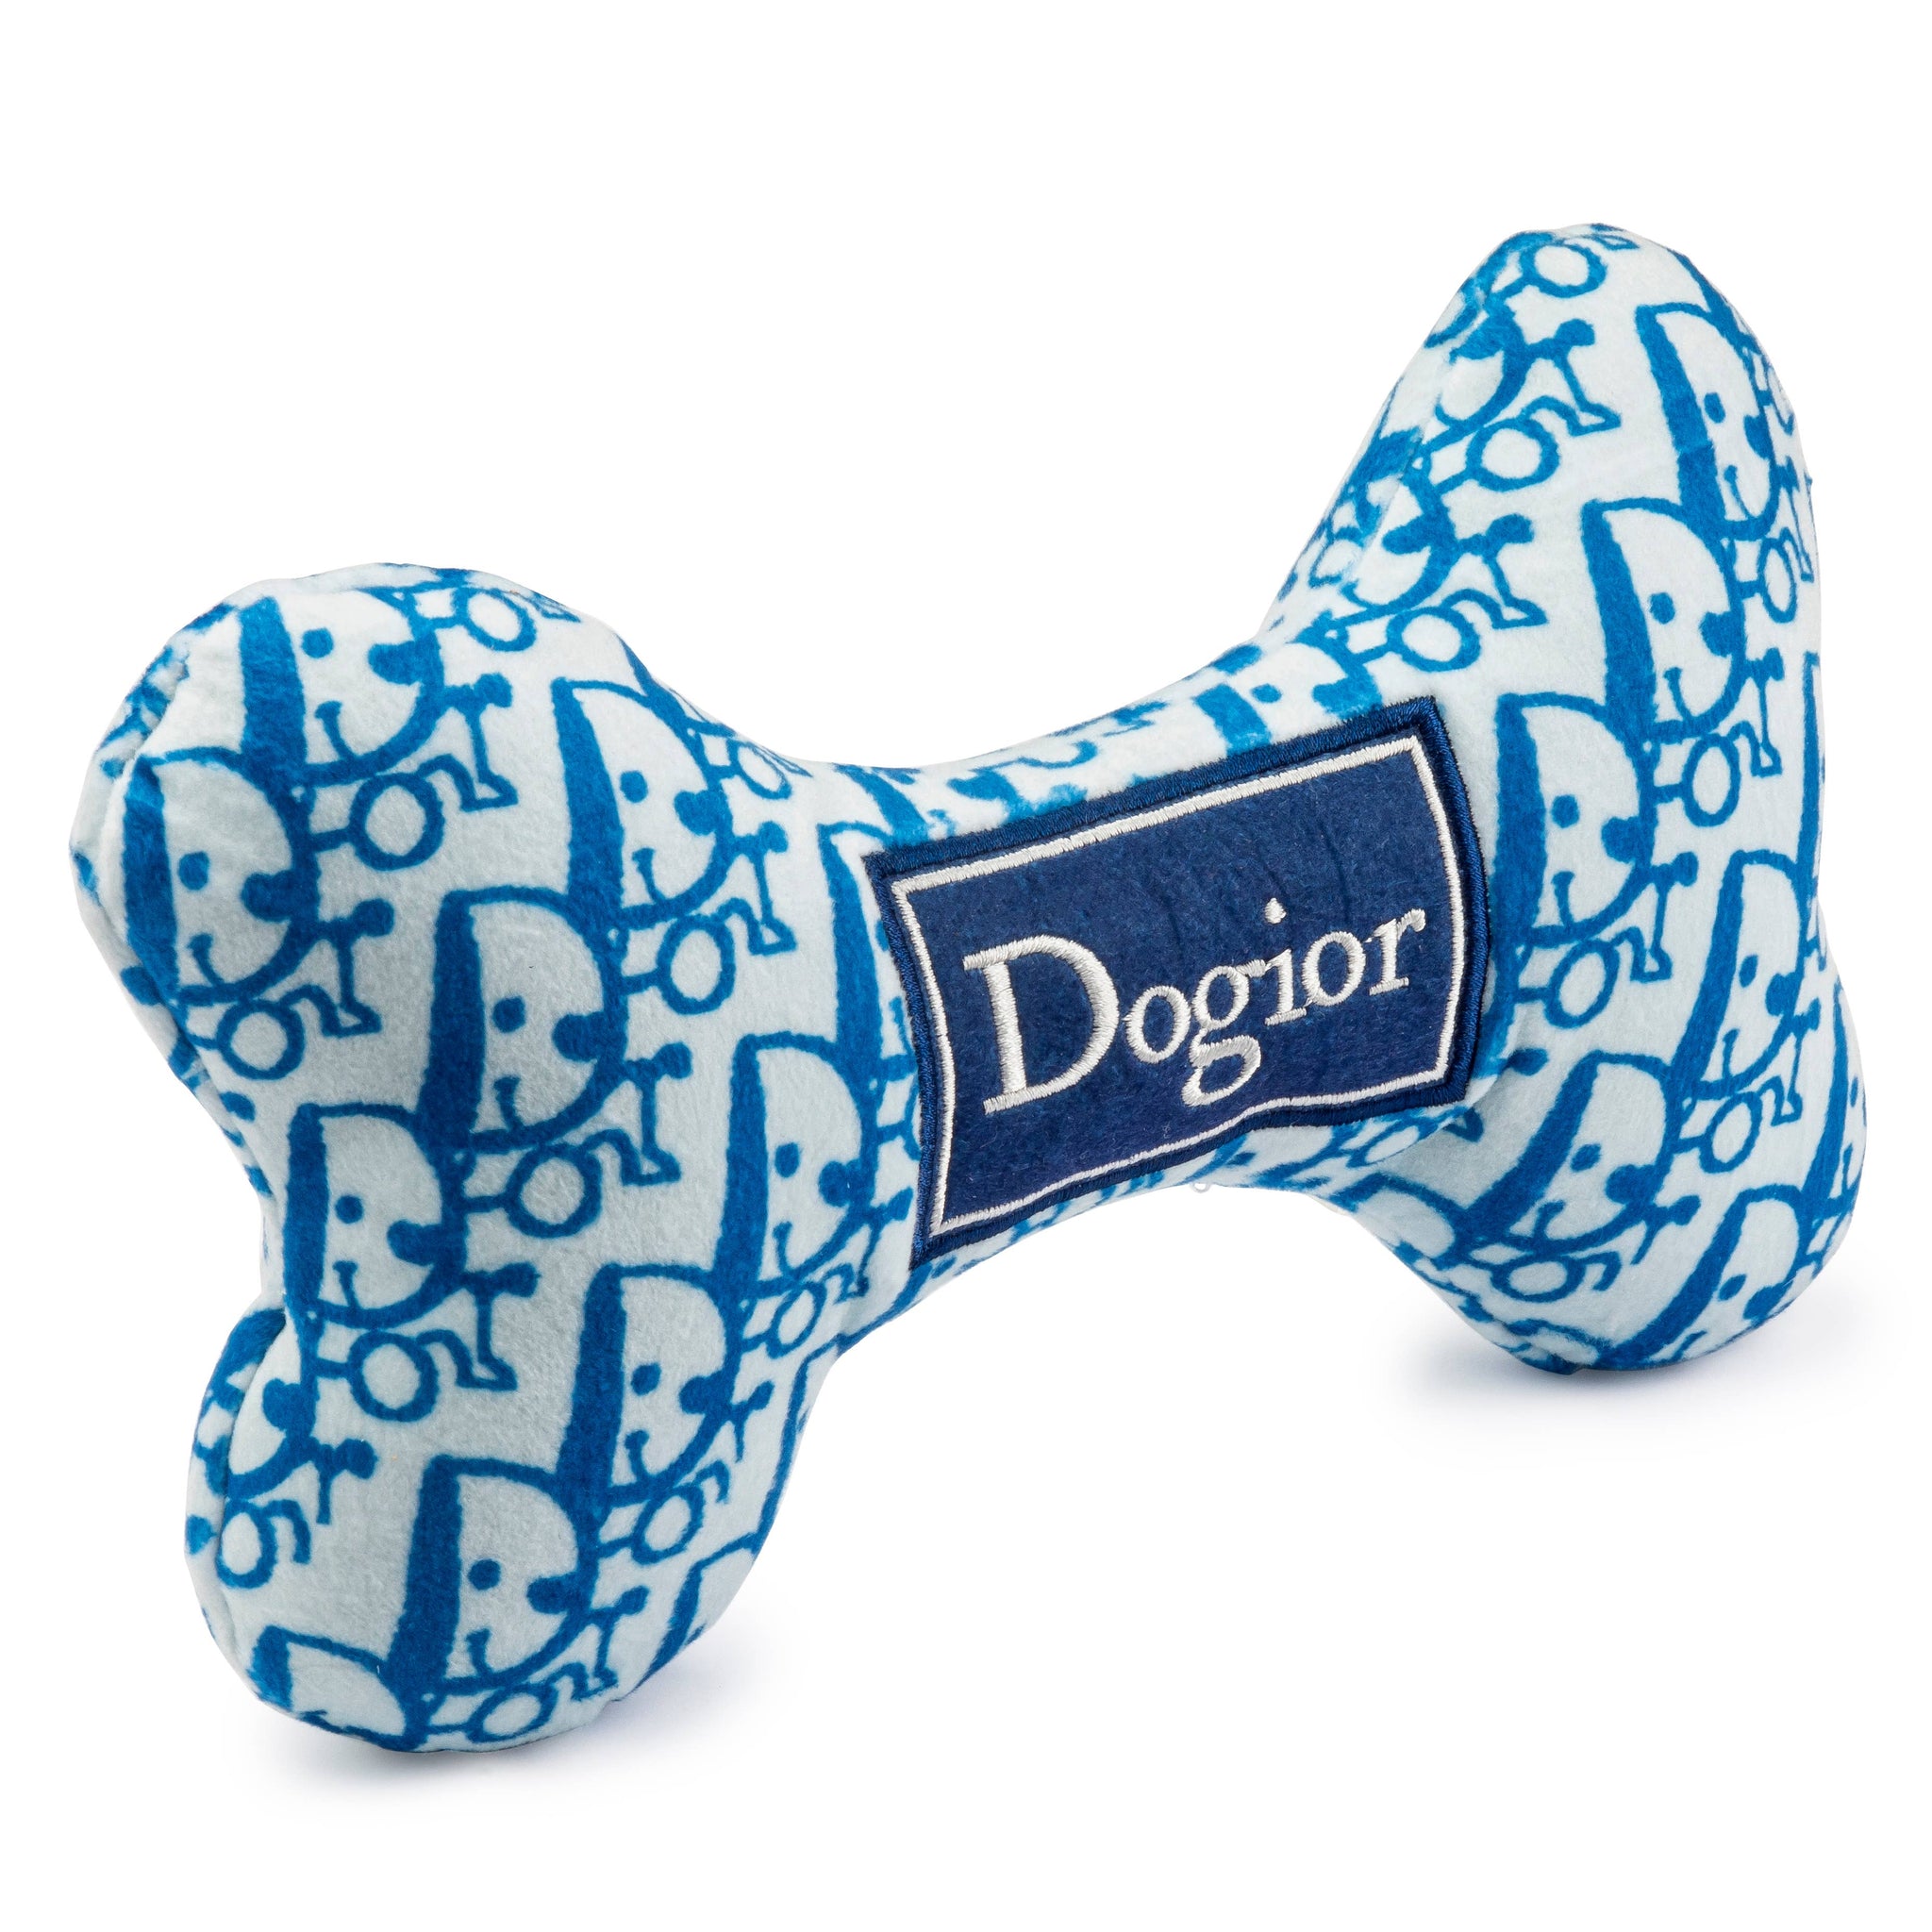 Dogior Bones Dog Toys: Large